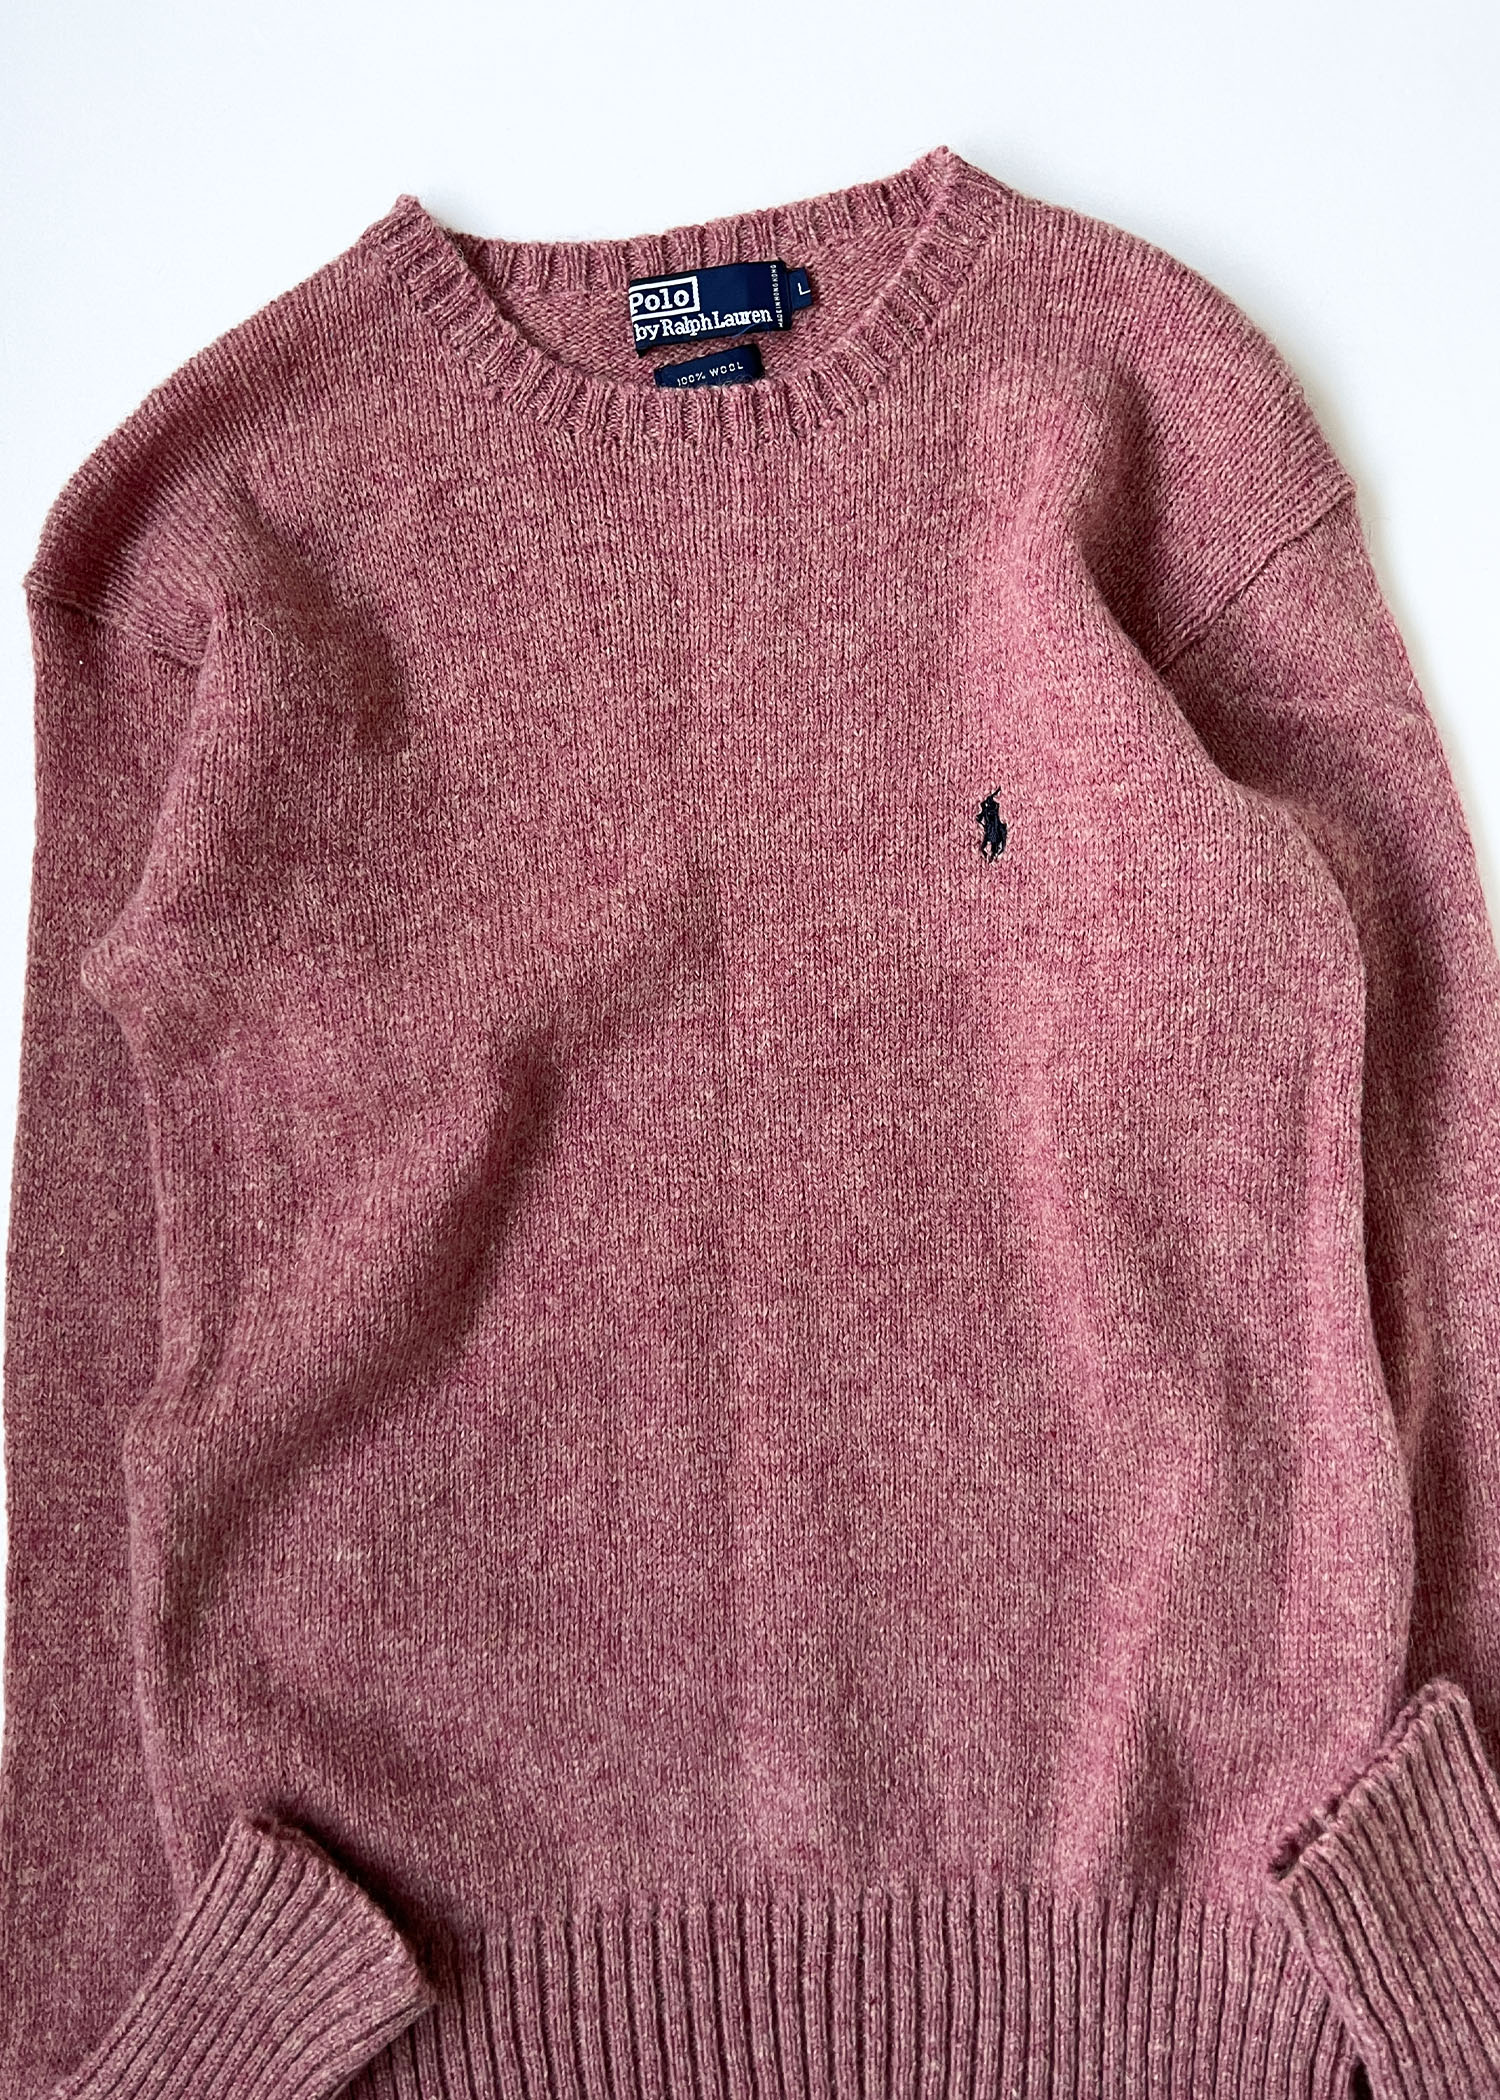 Polo by Ralph Lauren wool knit